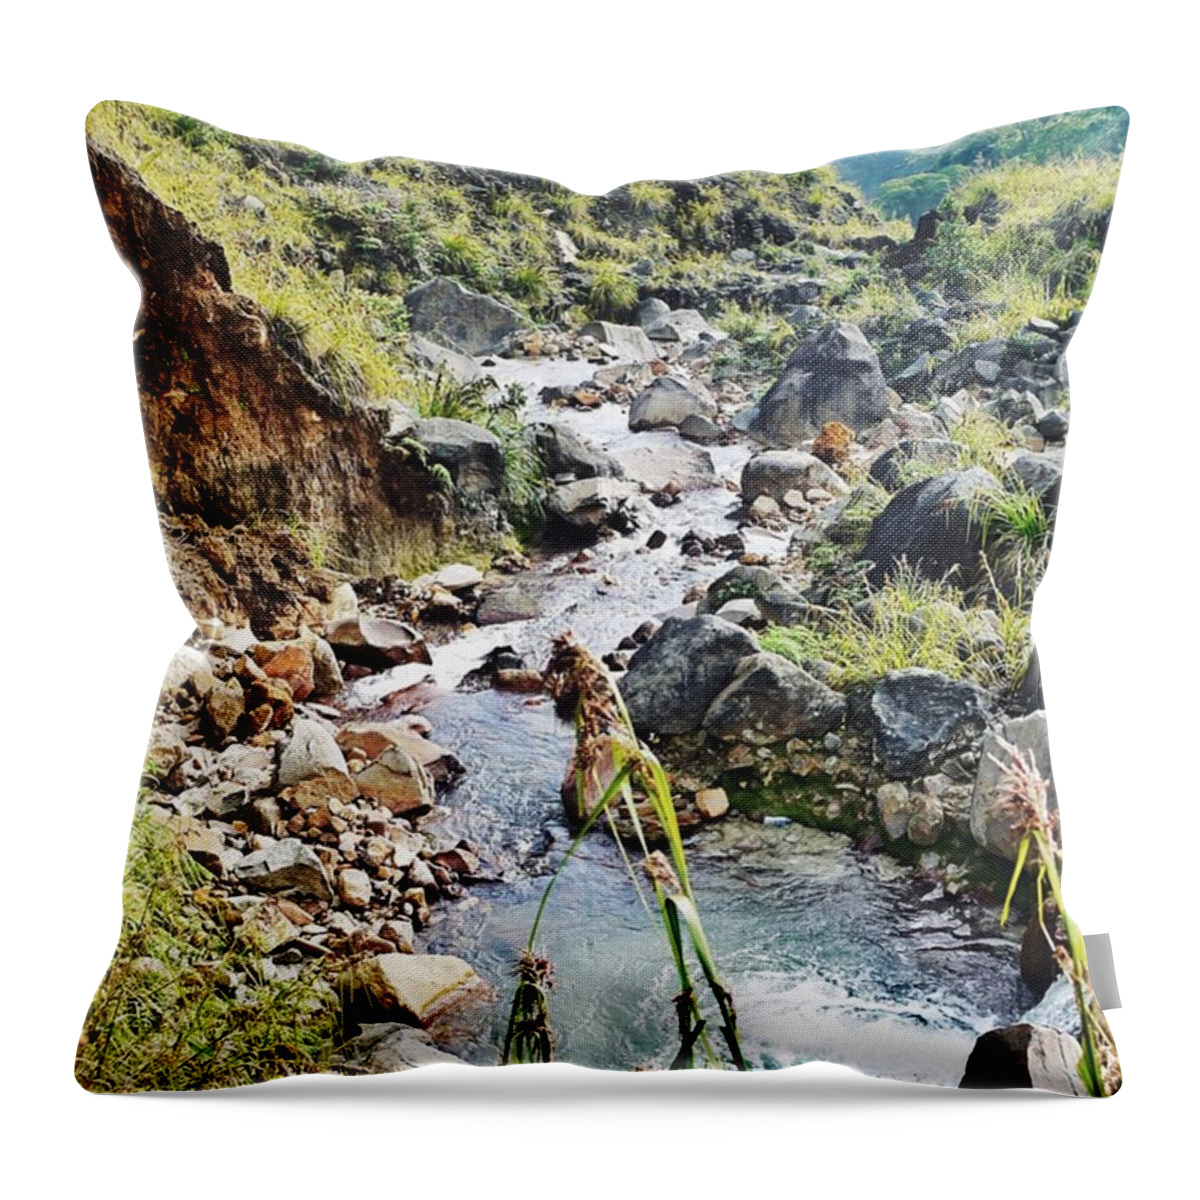 River Throw Pillow featuring the photograph River In Mount Papandayan by Mahargarani Saragih